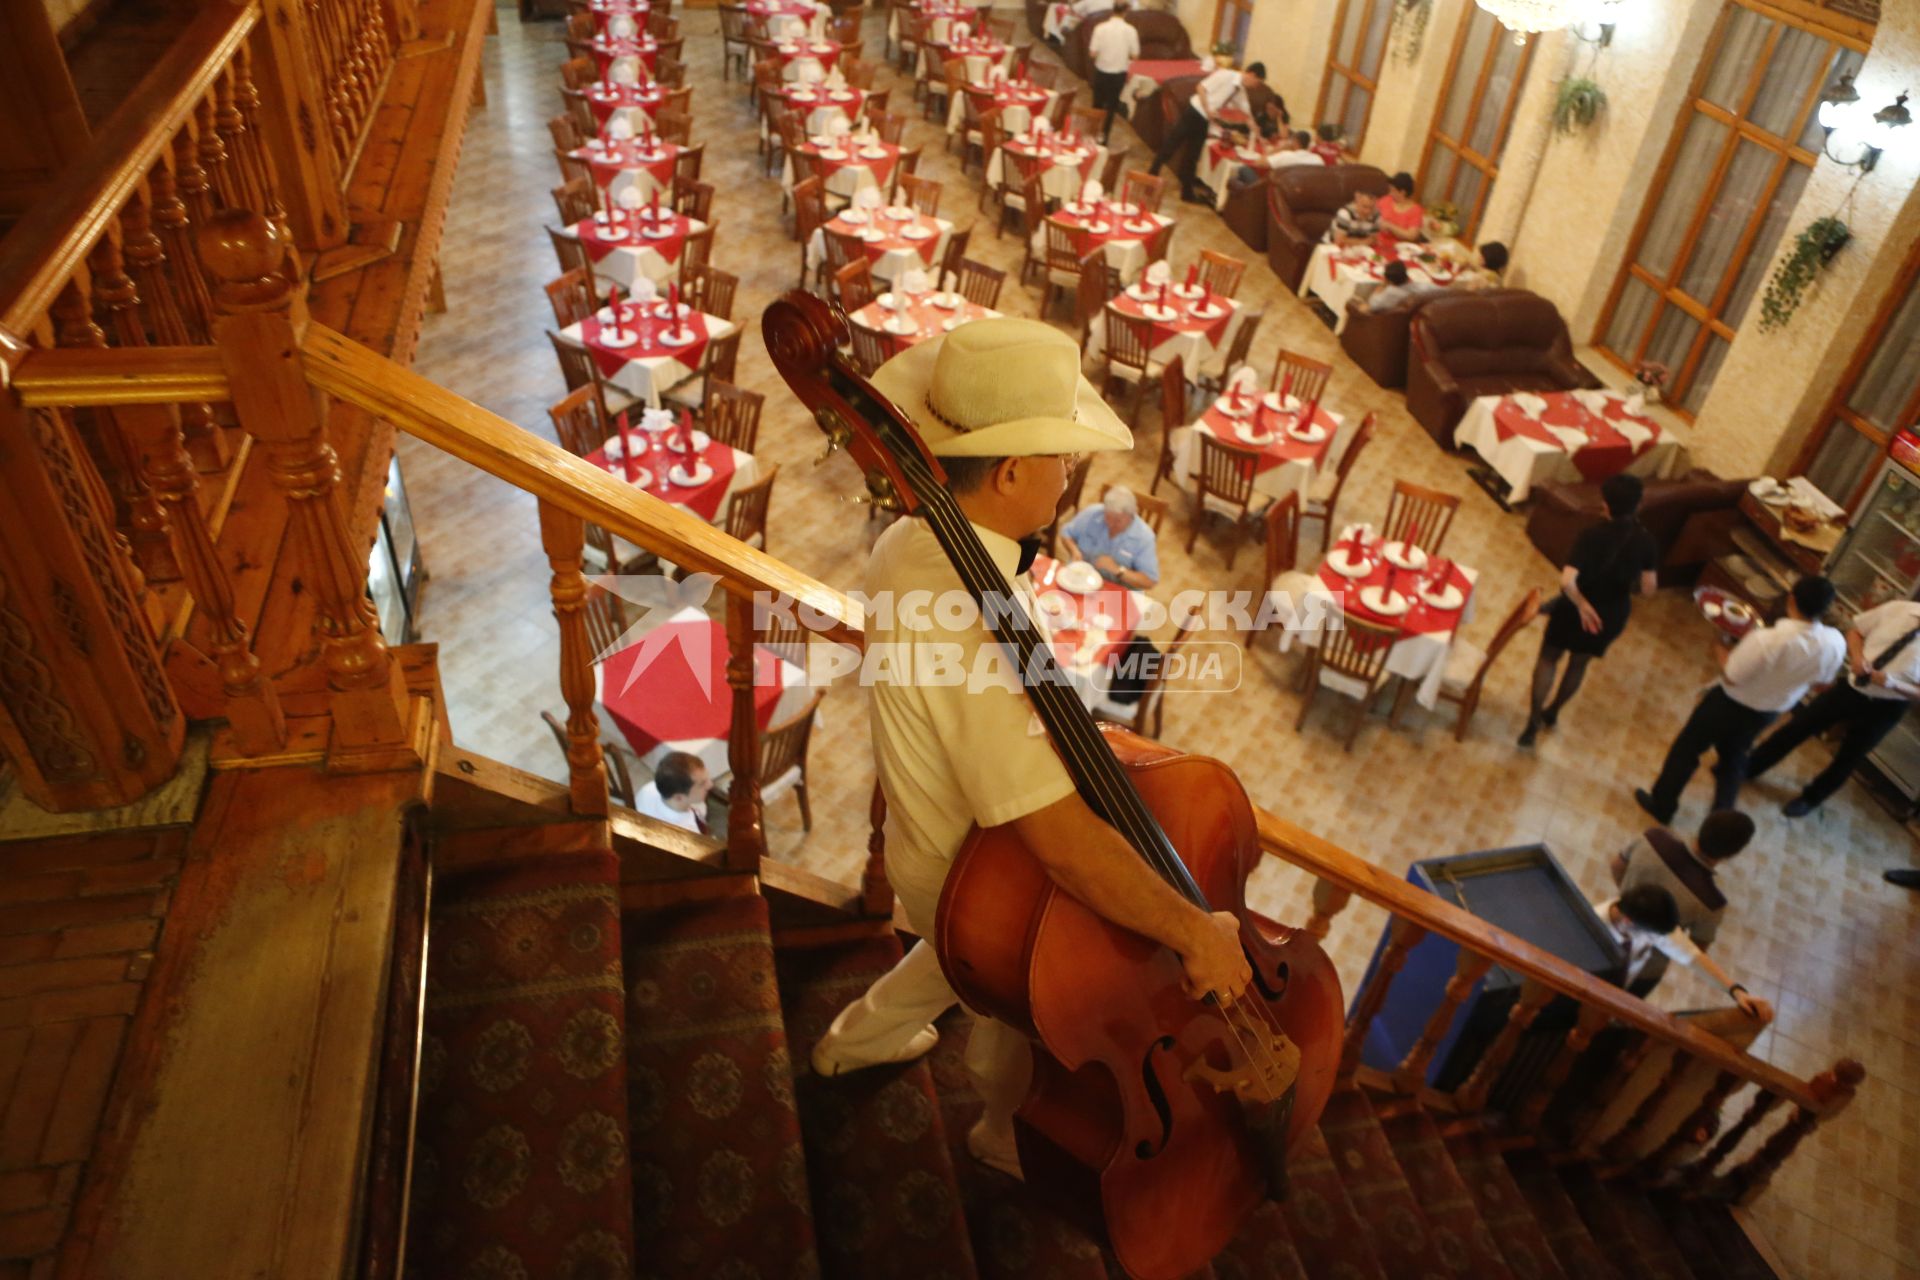 Ташкент. На снимке: музыкант в ресторане.